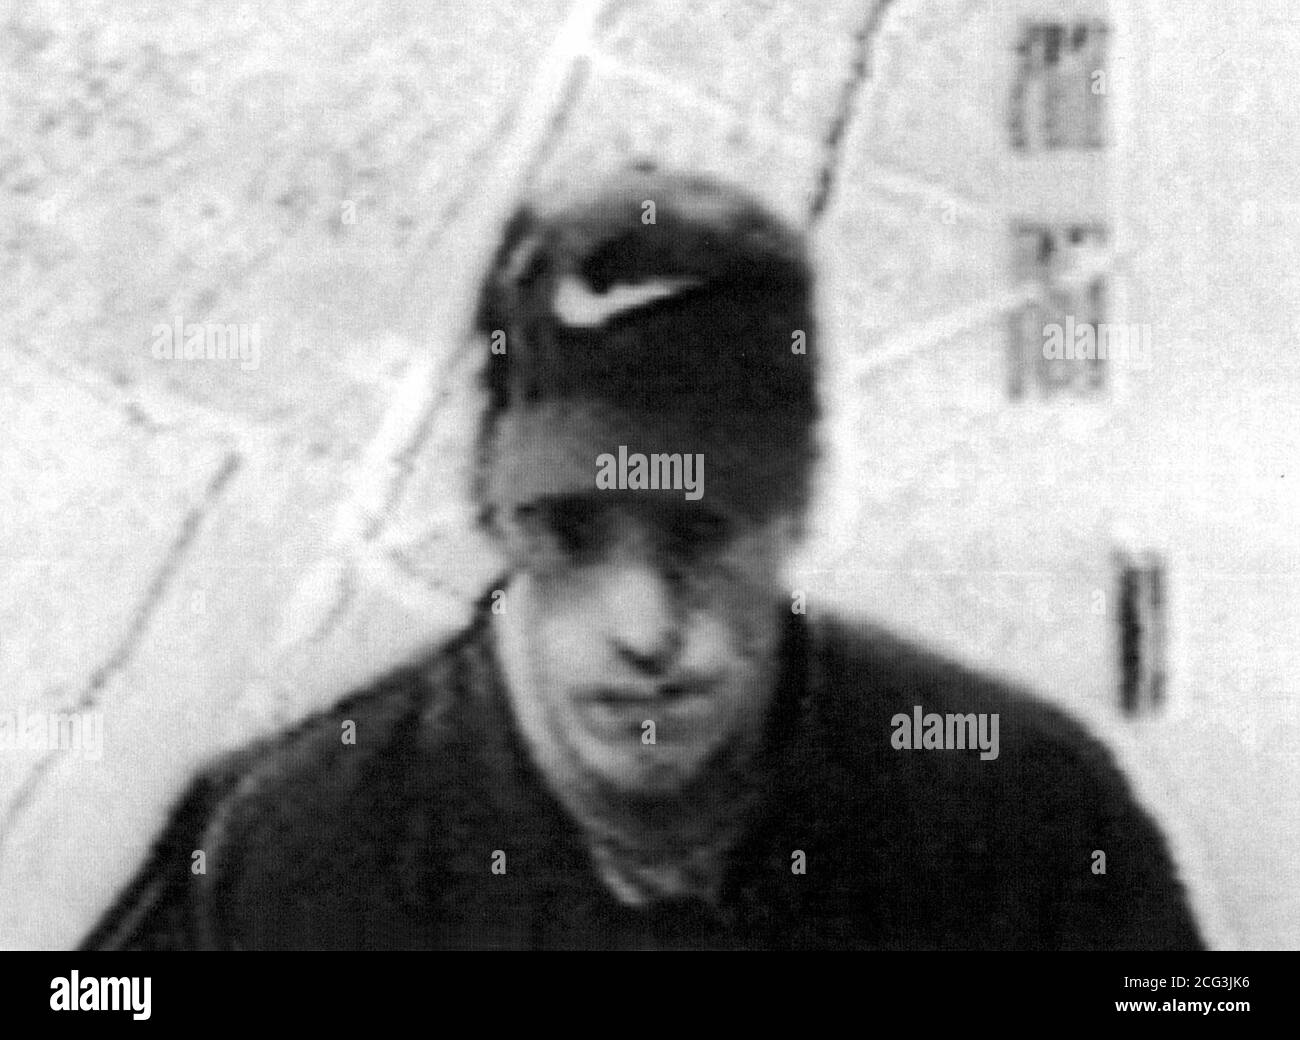 Image électronique améliorée par ordinateur émise aujourd'hui (dimanche) par la police d'un homme qui a visité le chantier de stockage autonome de Shepherd's Bush à l'ouest de Londres le 7 novembre, la veille d'un incident lié à une activité criminelle provisoire de l'IRA. Il a donné le nom Tommy Hearns et est décrit comme blanc, de 6 pieds de haut, de 25 à 27 ans, avec des yeux étoilé foncé et un 'visage battue', avec un grand nez. Il portait une casquette de baseball Nike et une veste sombre avec de nombreuses poches. Voir PA Story POLICE IRA/PA. Banque D'Images